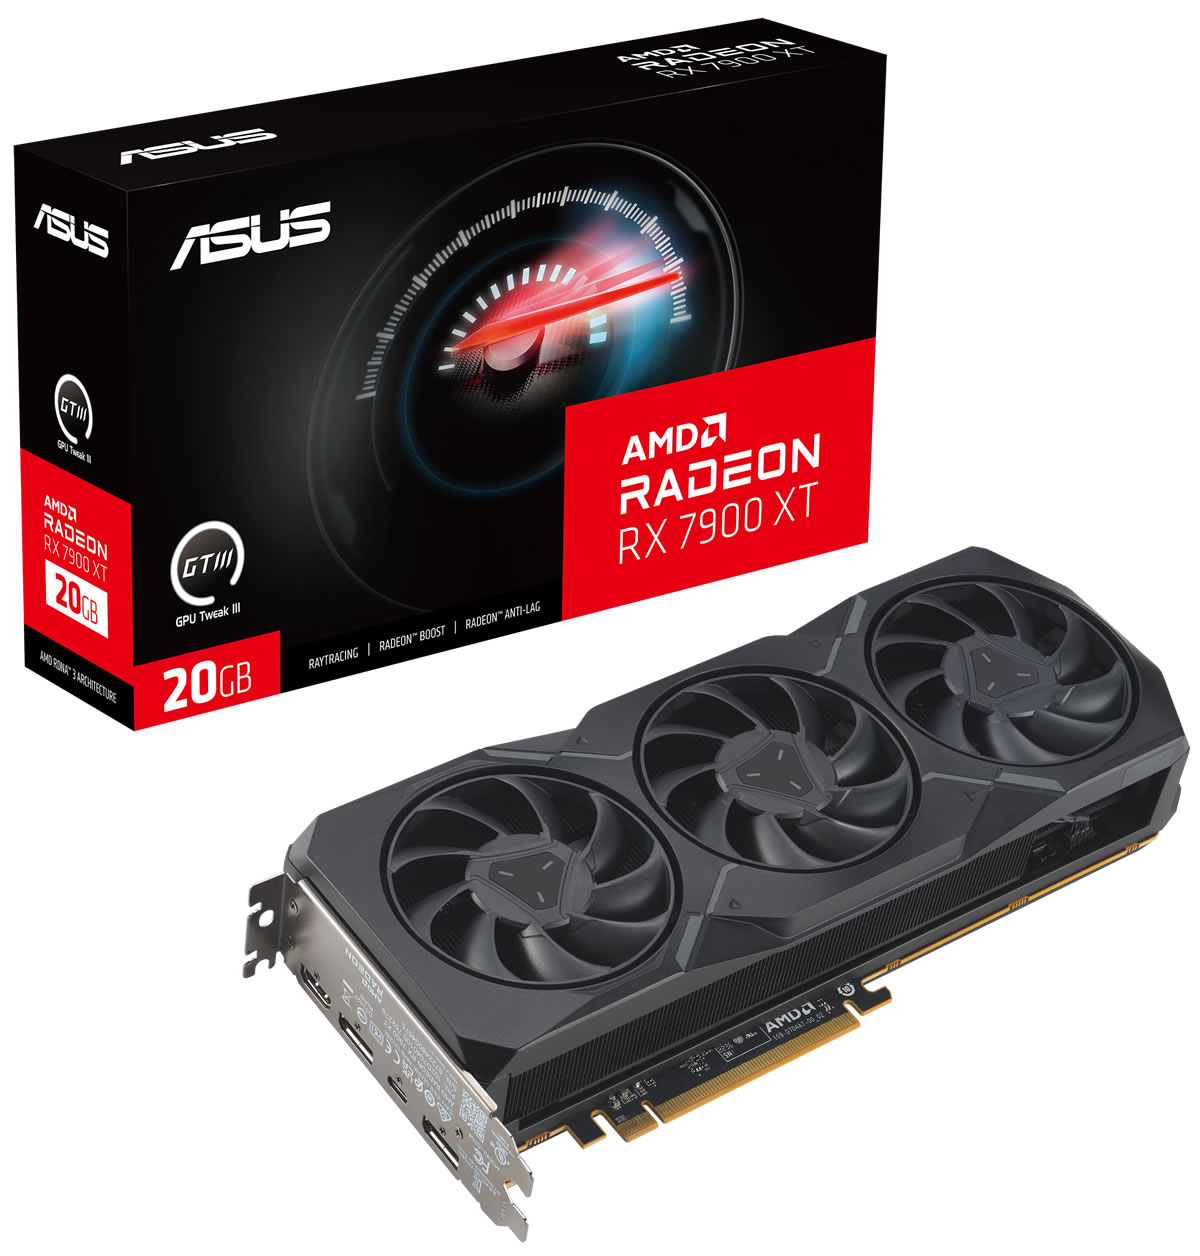 Asus - Asus Radeon RX 7900 XT Gaming 20GB GDDR6 PCI-Express Graphics Card